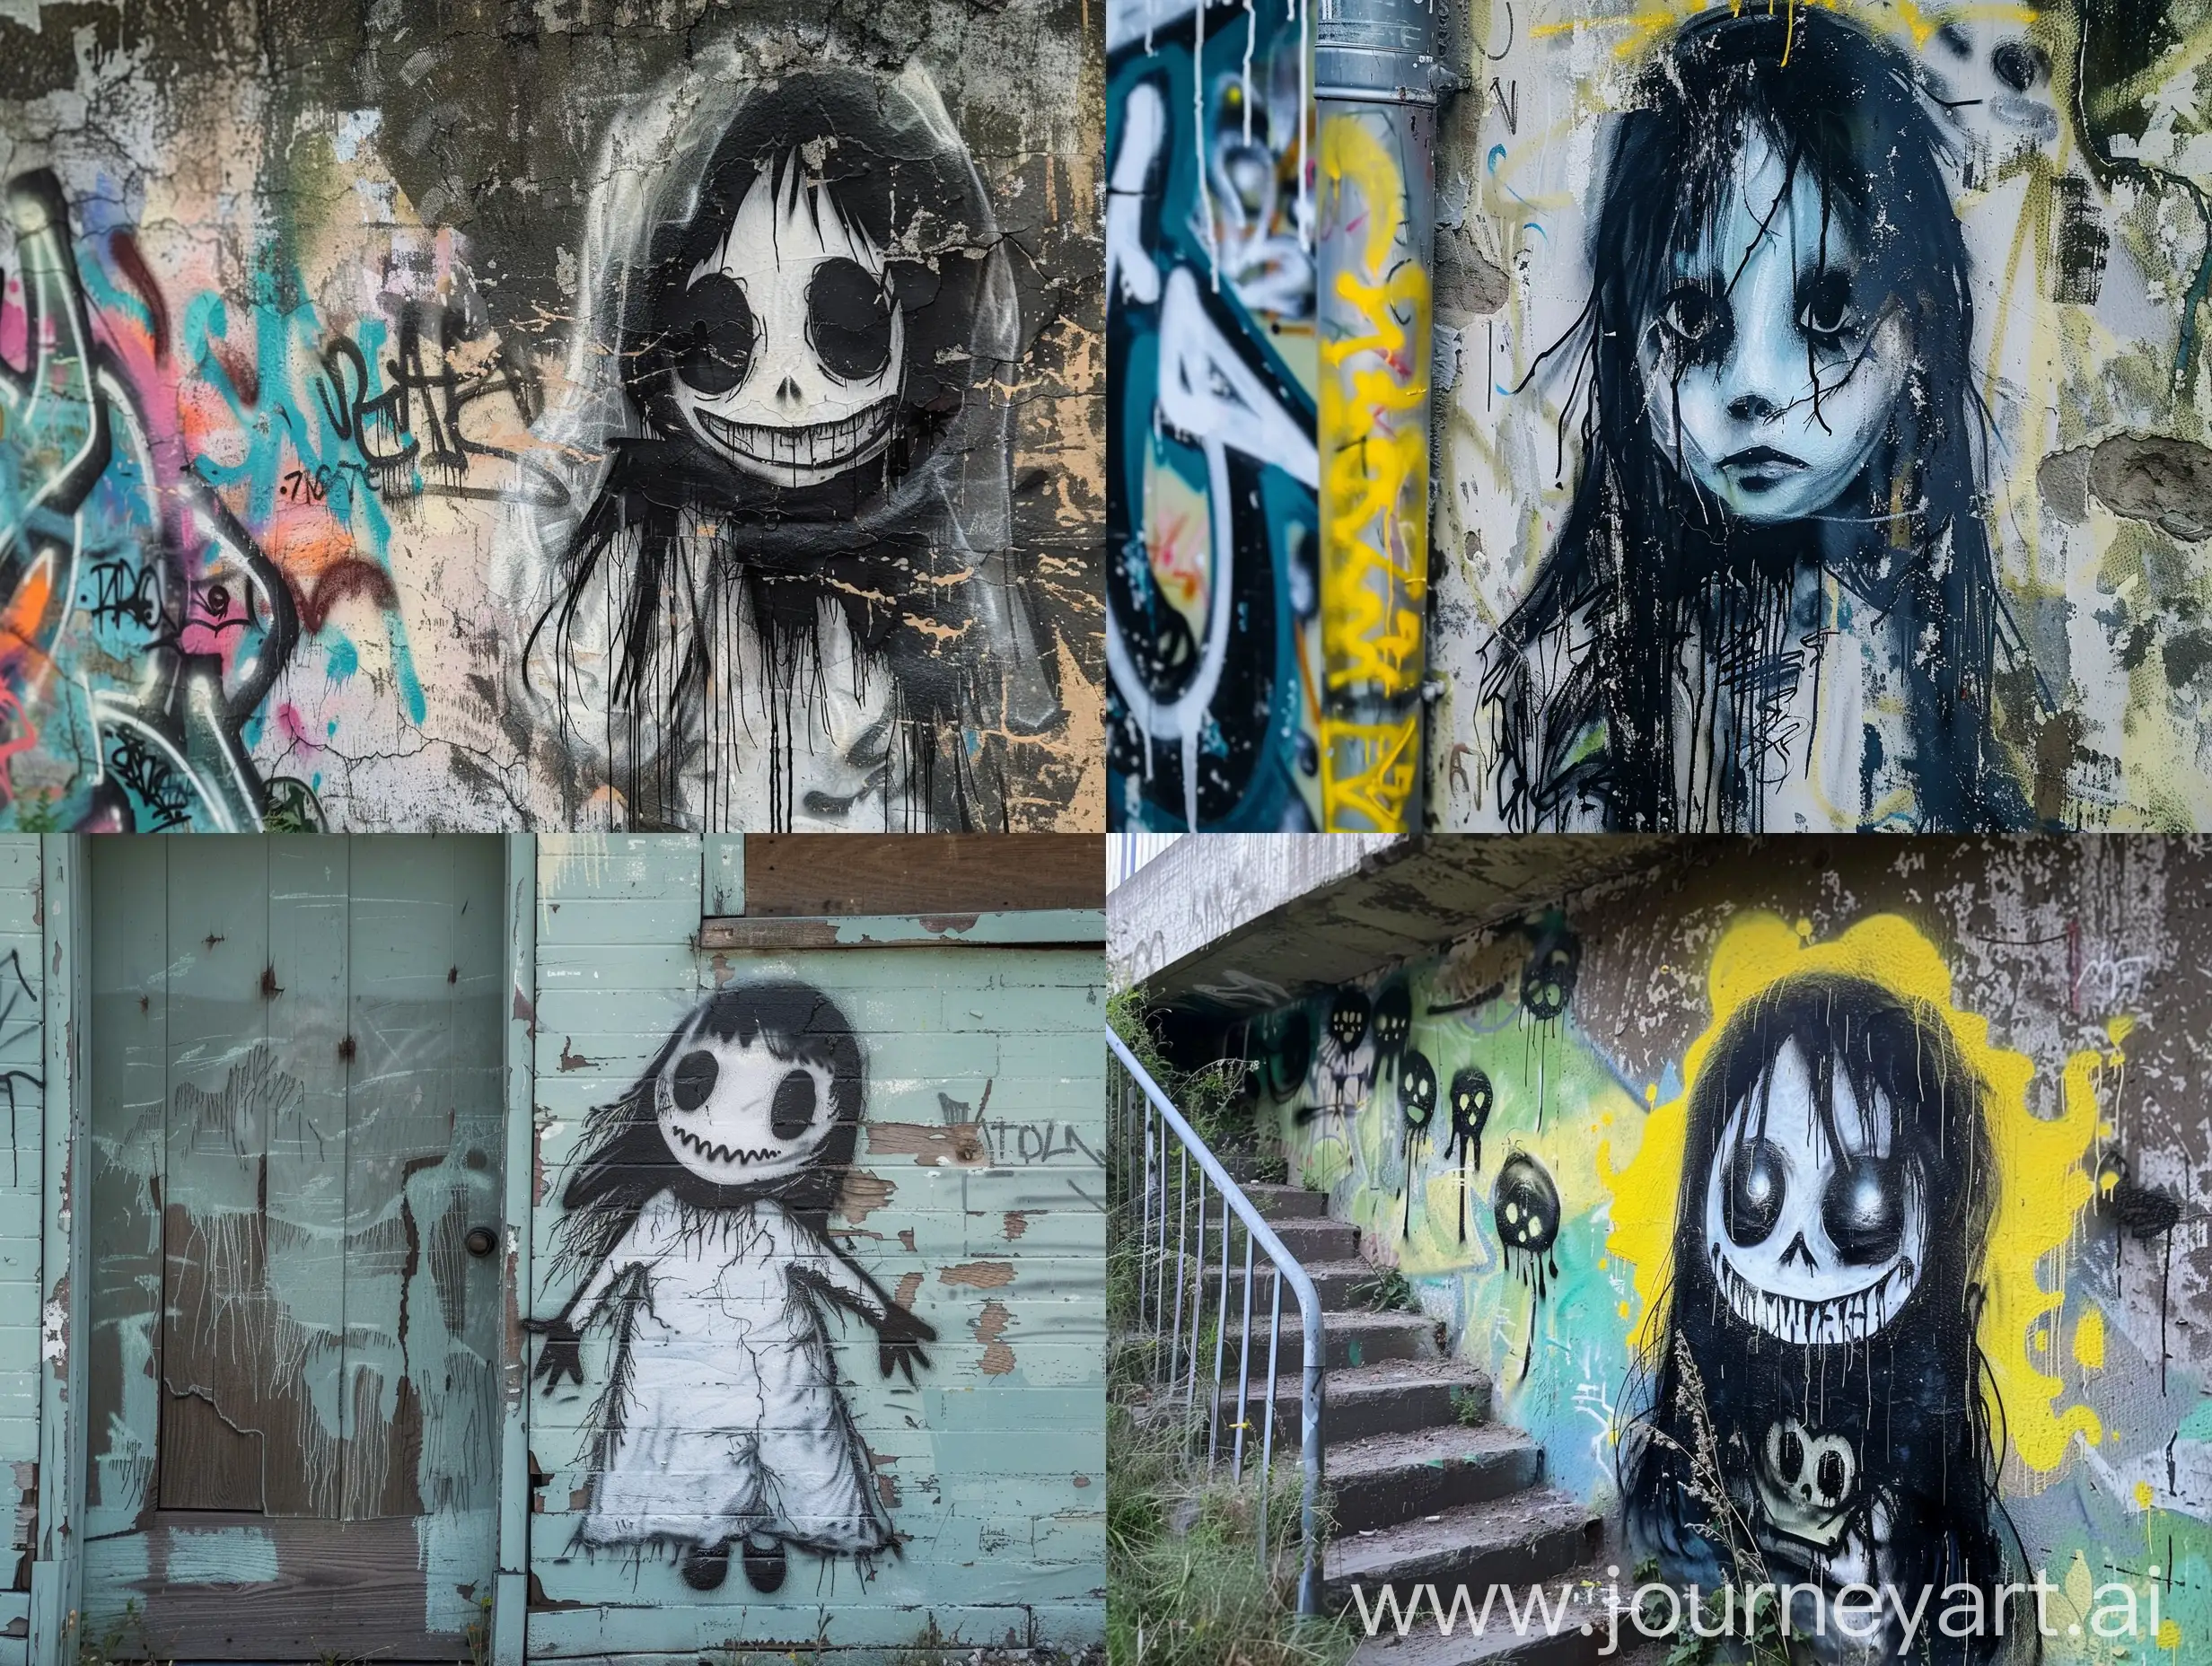 Graffiti depicting a creepy ghost girl

